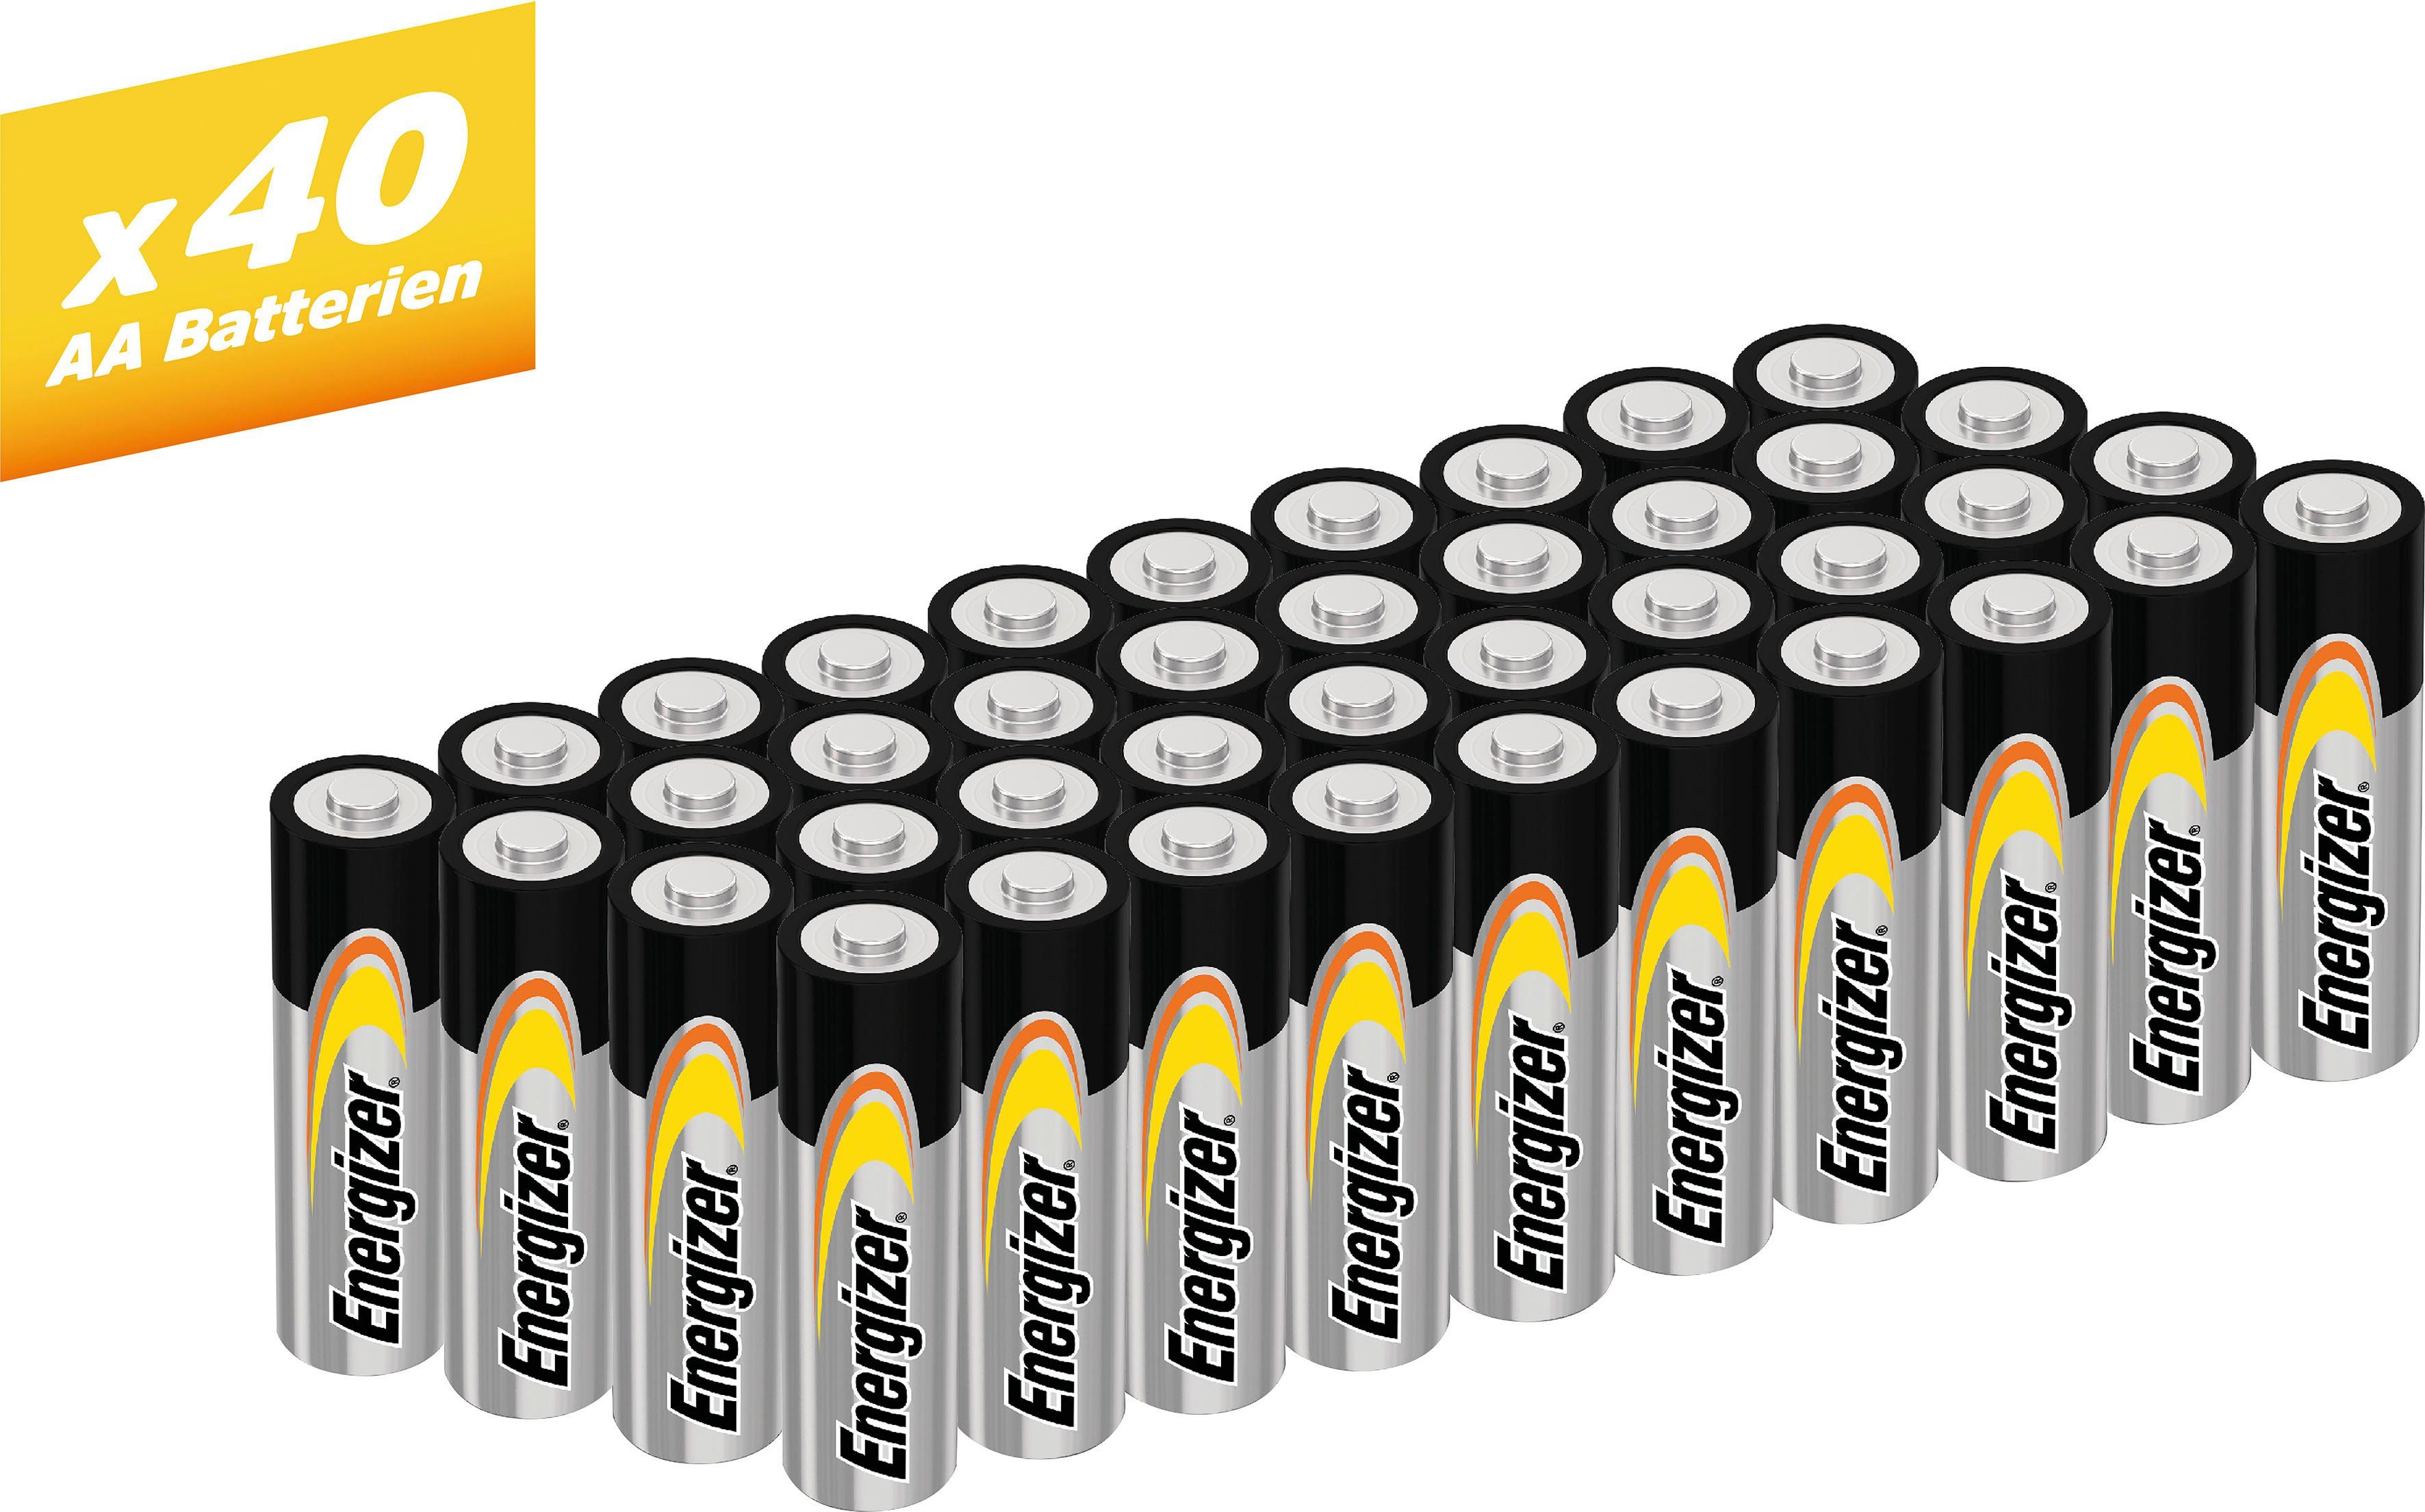 Energizer 40er Pack Alkaline Power Mignon (AA) Batterie, LR06 (1,5 V, 40 St)